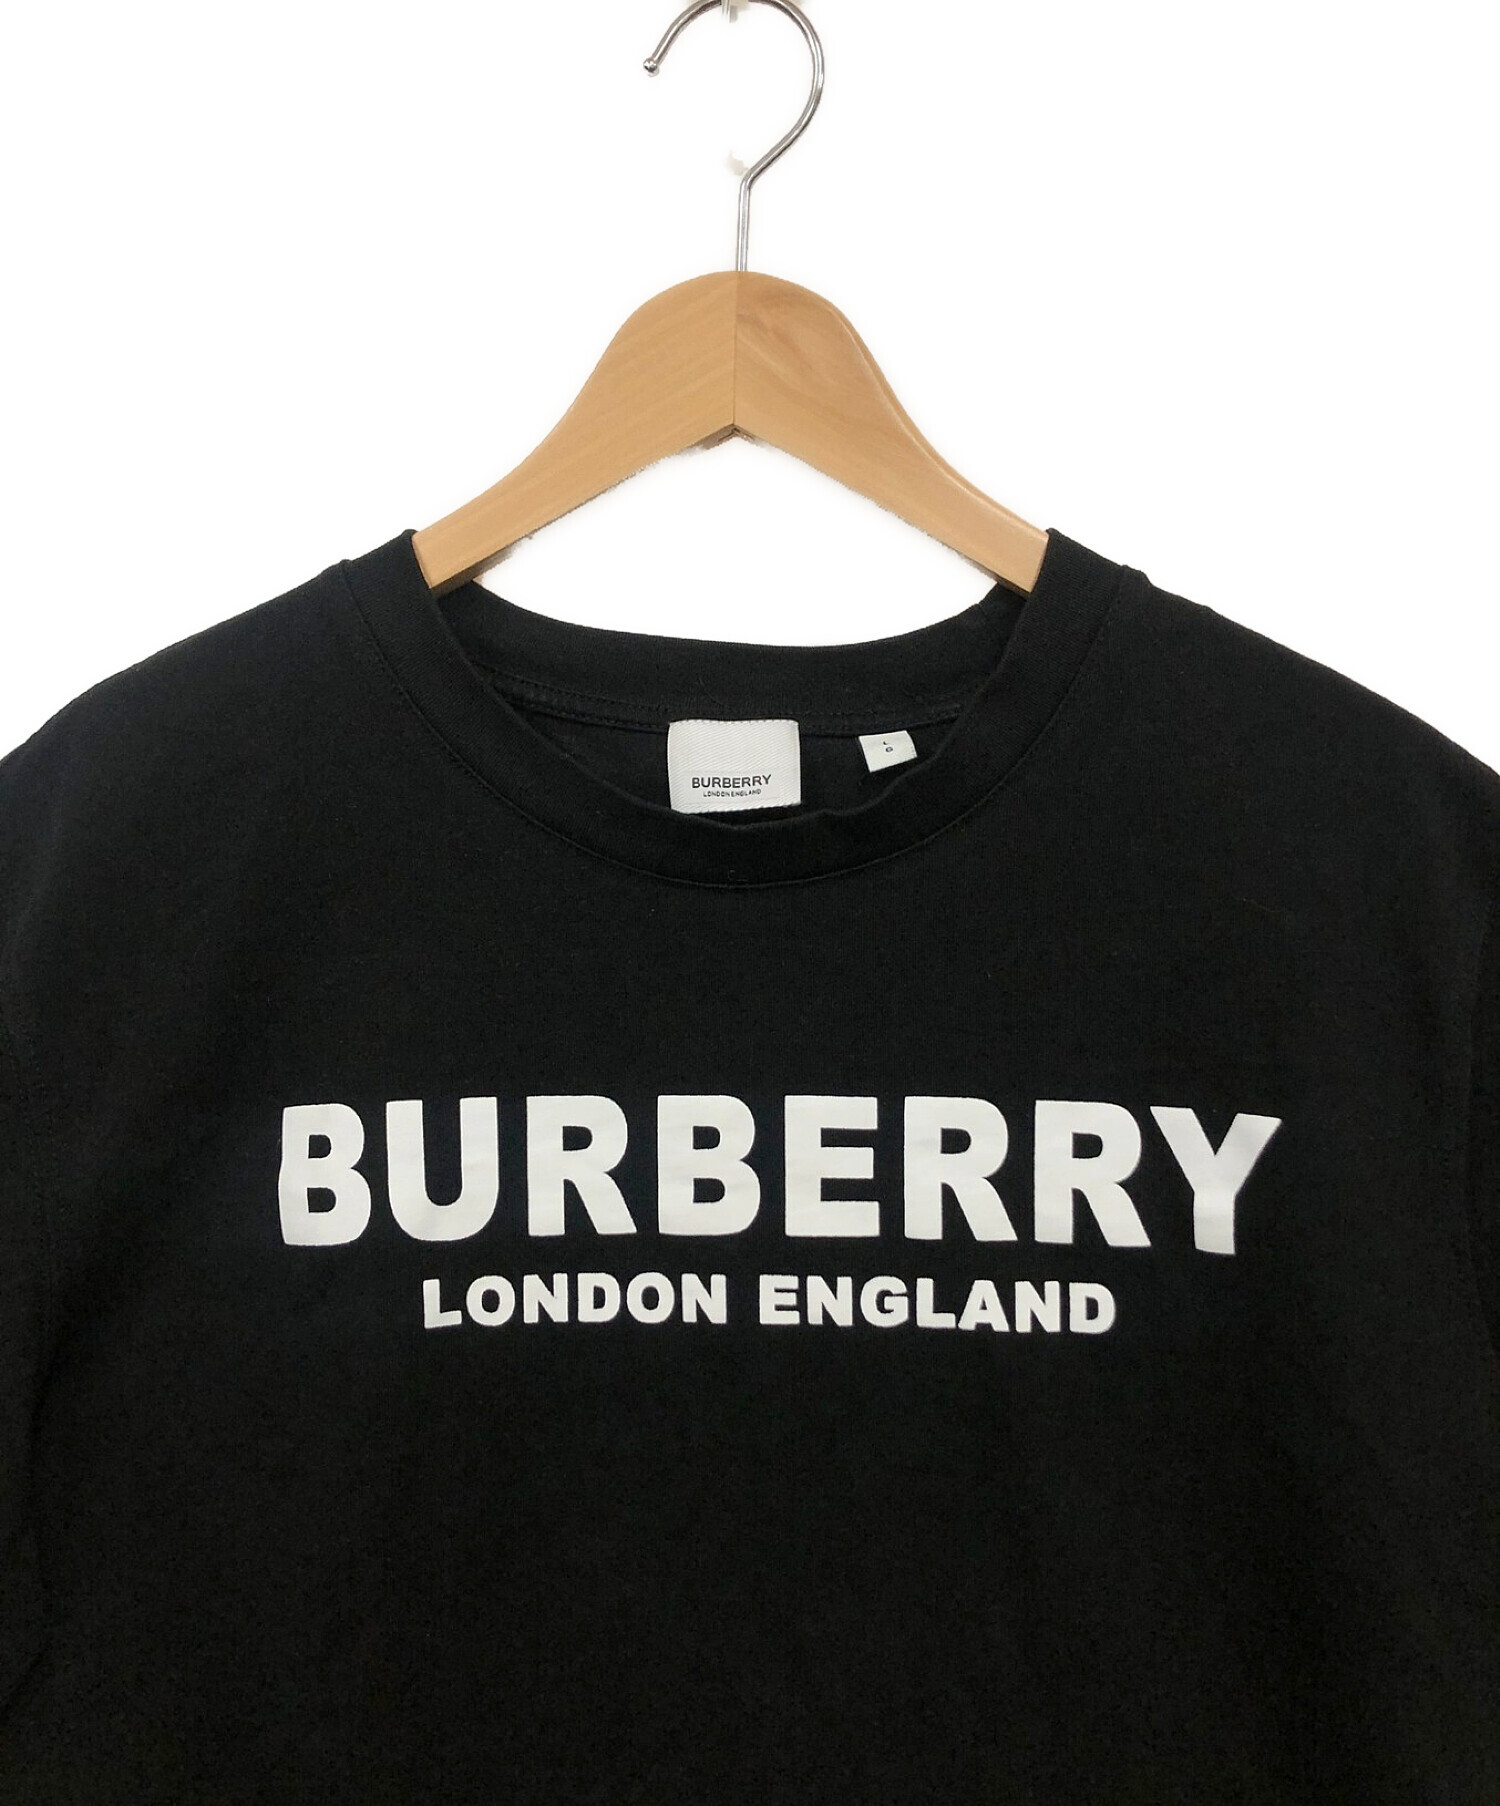 BURBERRY LONDON ENGLAND (バーバリー ロンドン イングランド) Tシャツ ブラック サイズ:L